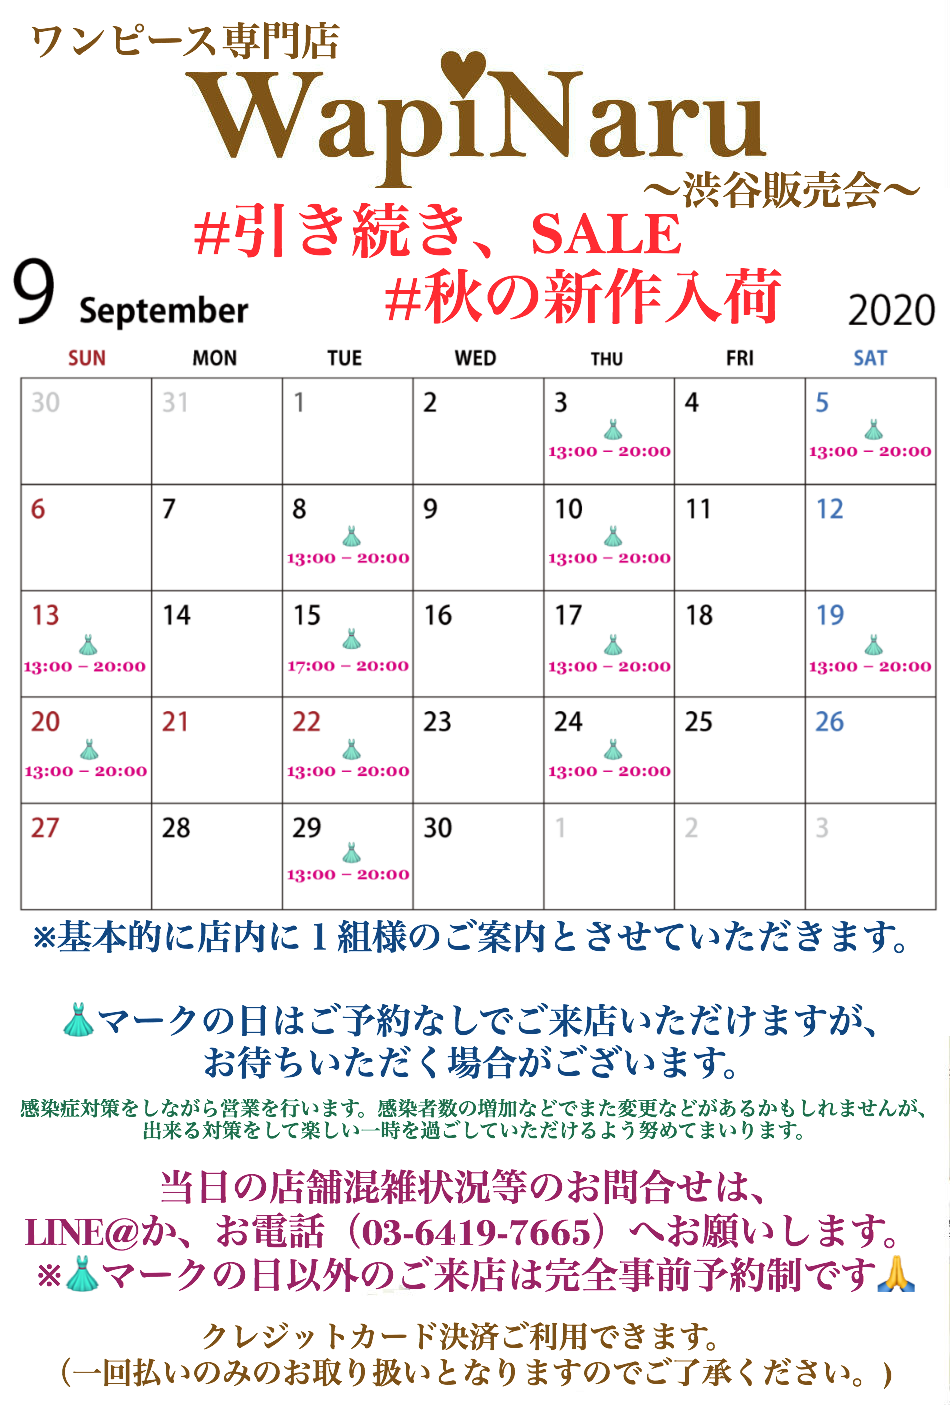 2020年9月 渋谷販売会